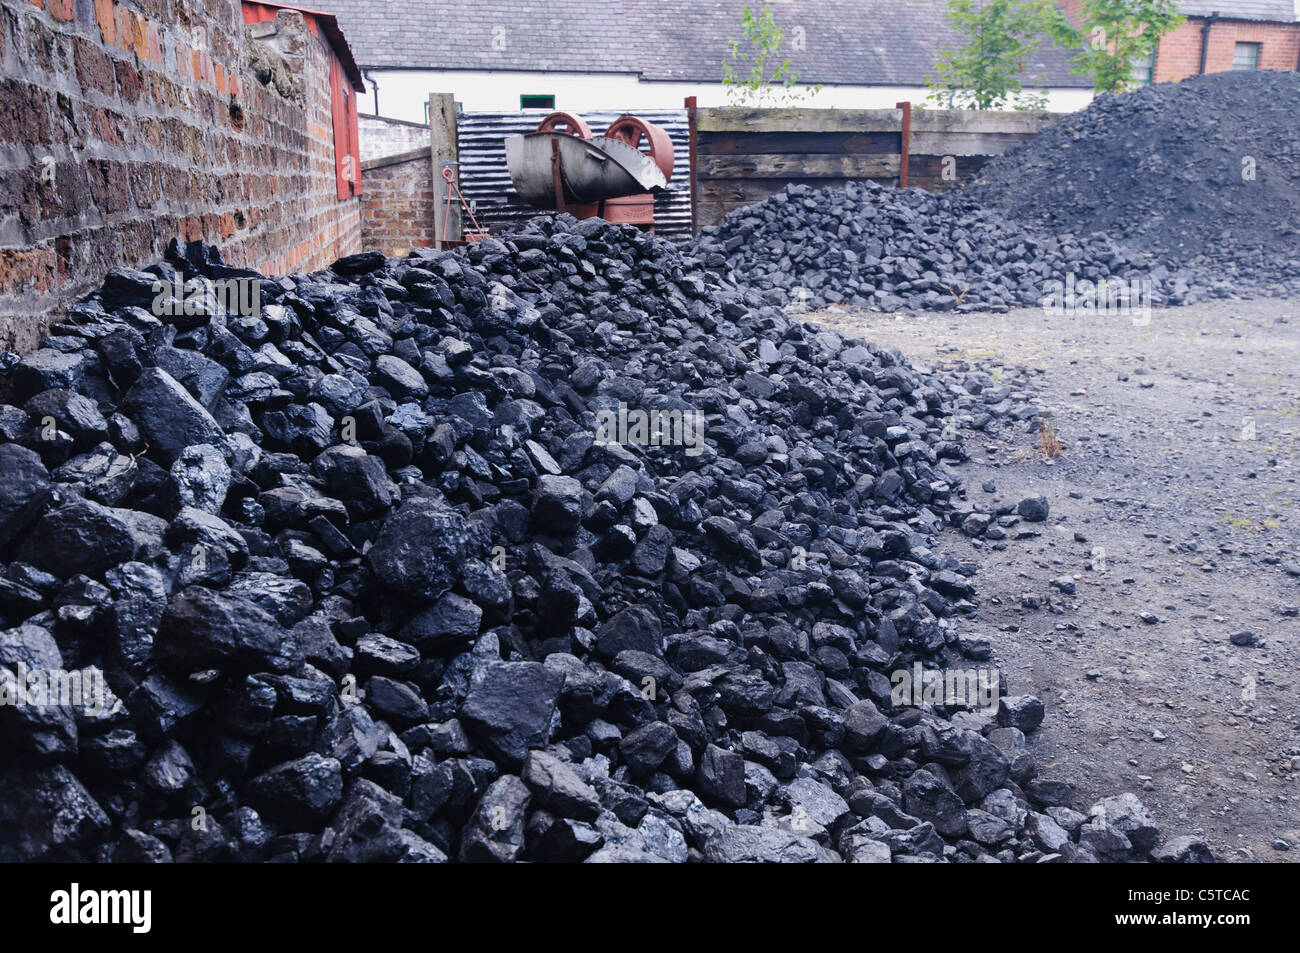 Piles of coal at a coal yard Stock Photo